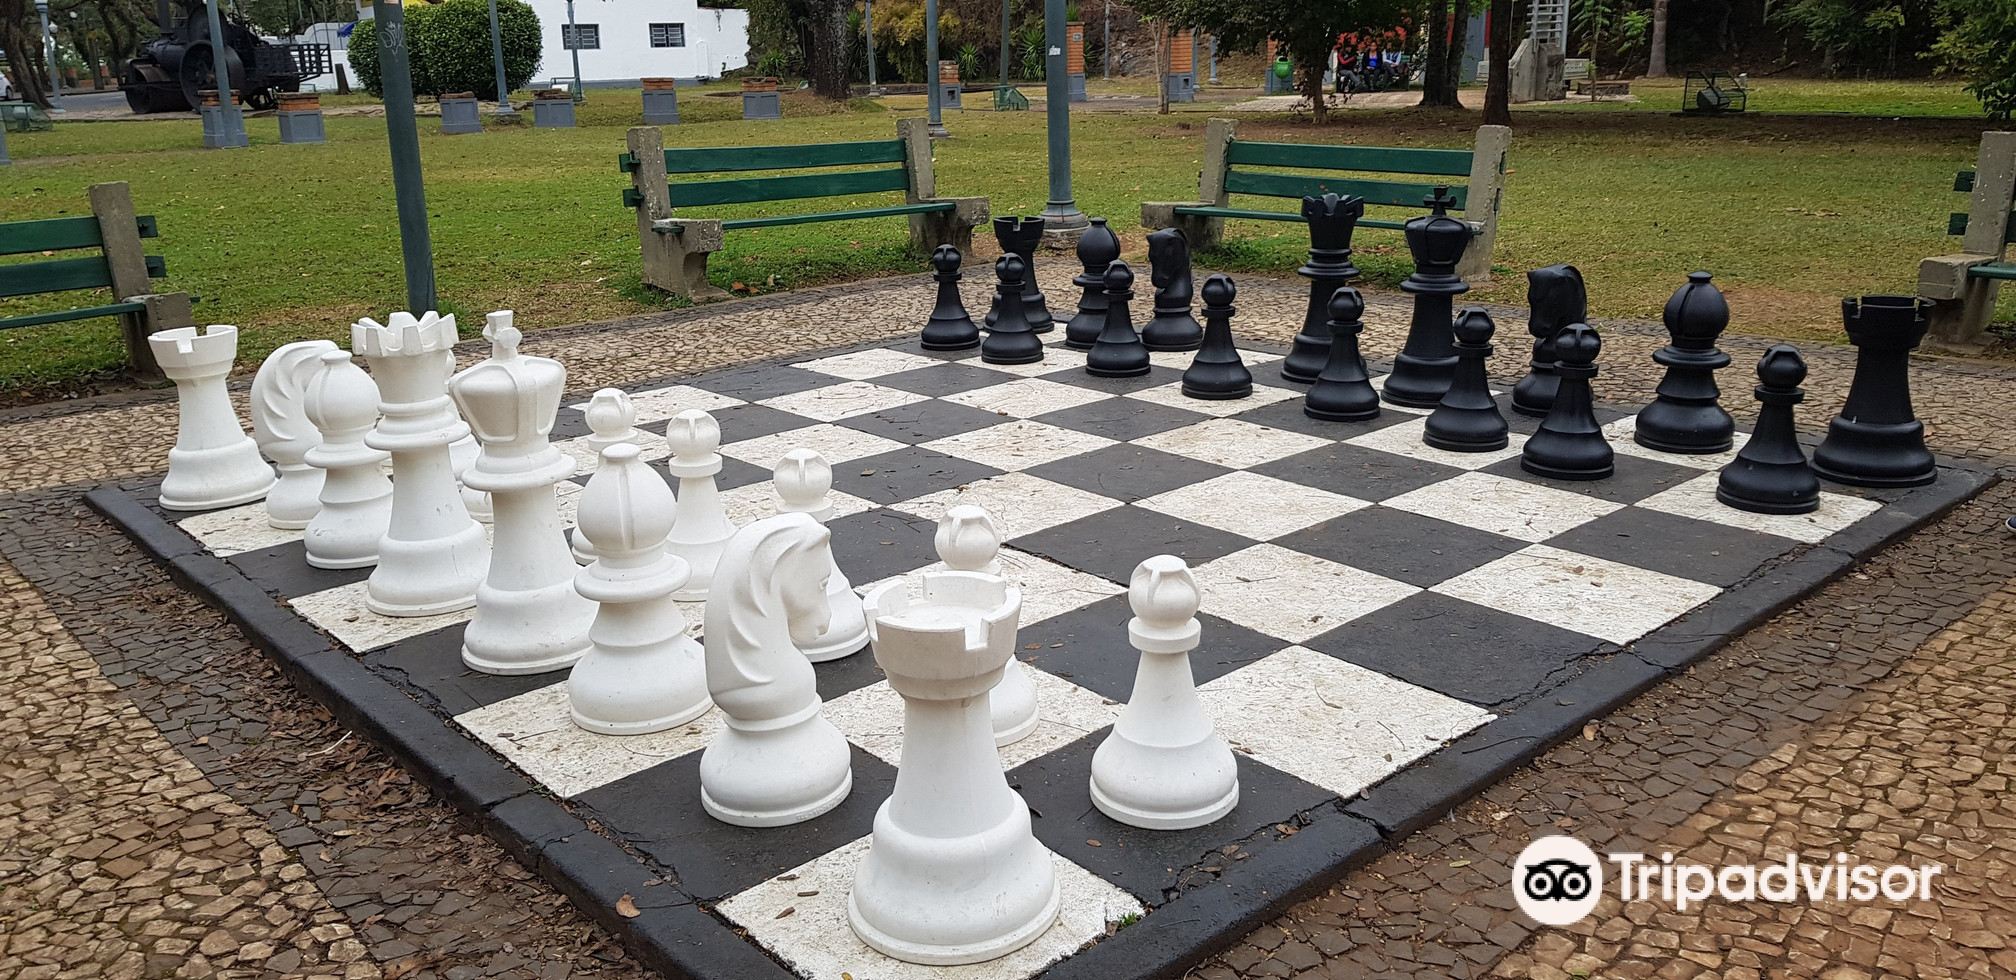 xadrez gigante - Picture of Xadrez Gigante Recebe Melhorias, Pocos de Caldas  - Tripadvisor